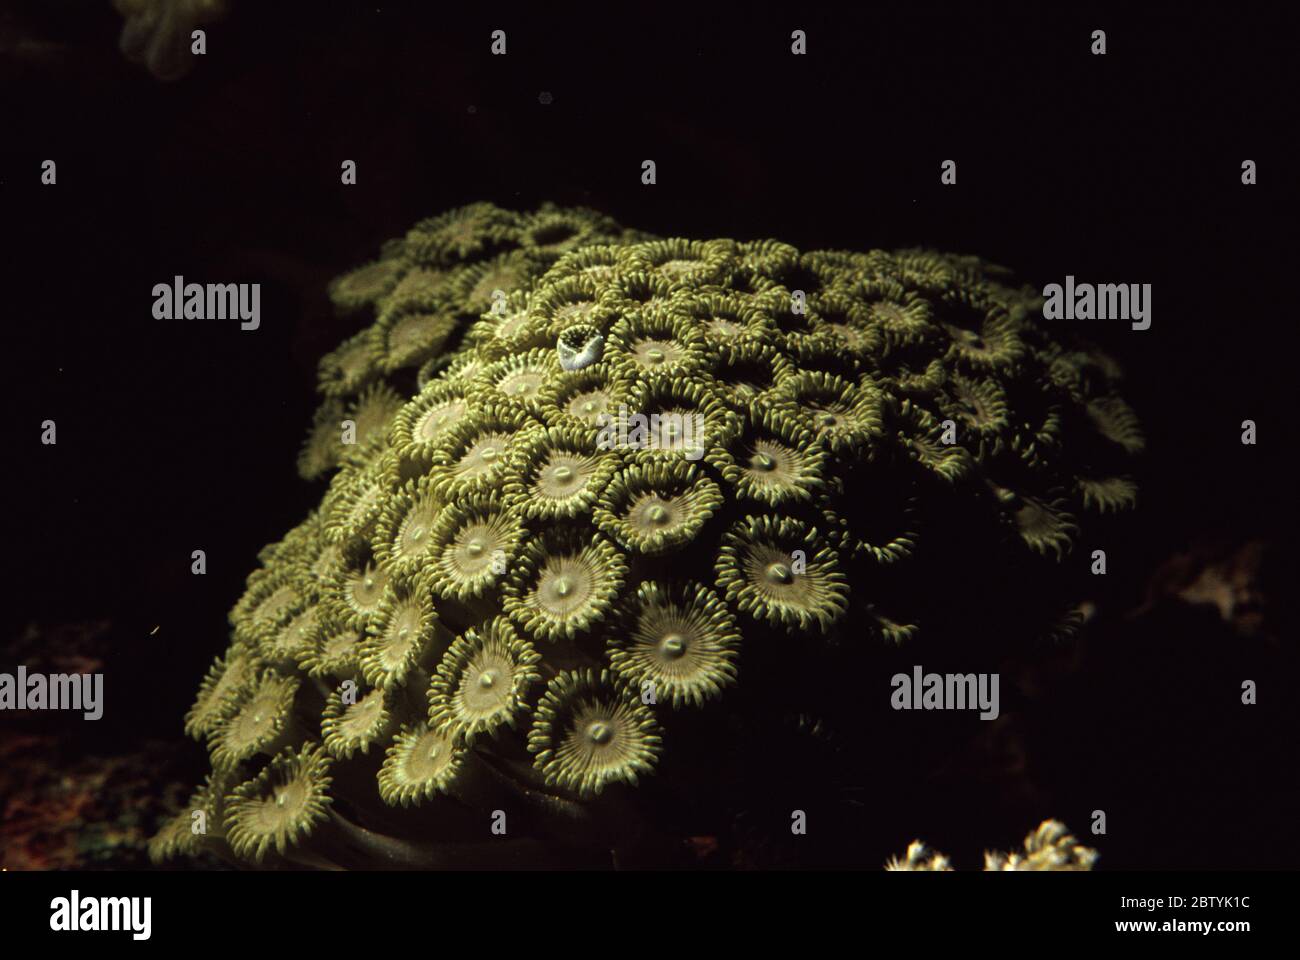 Zoanthid green polyps, Zoanthus sp. Stock Photo